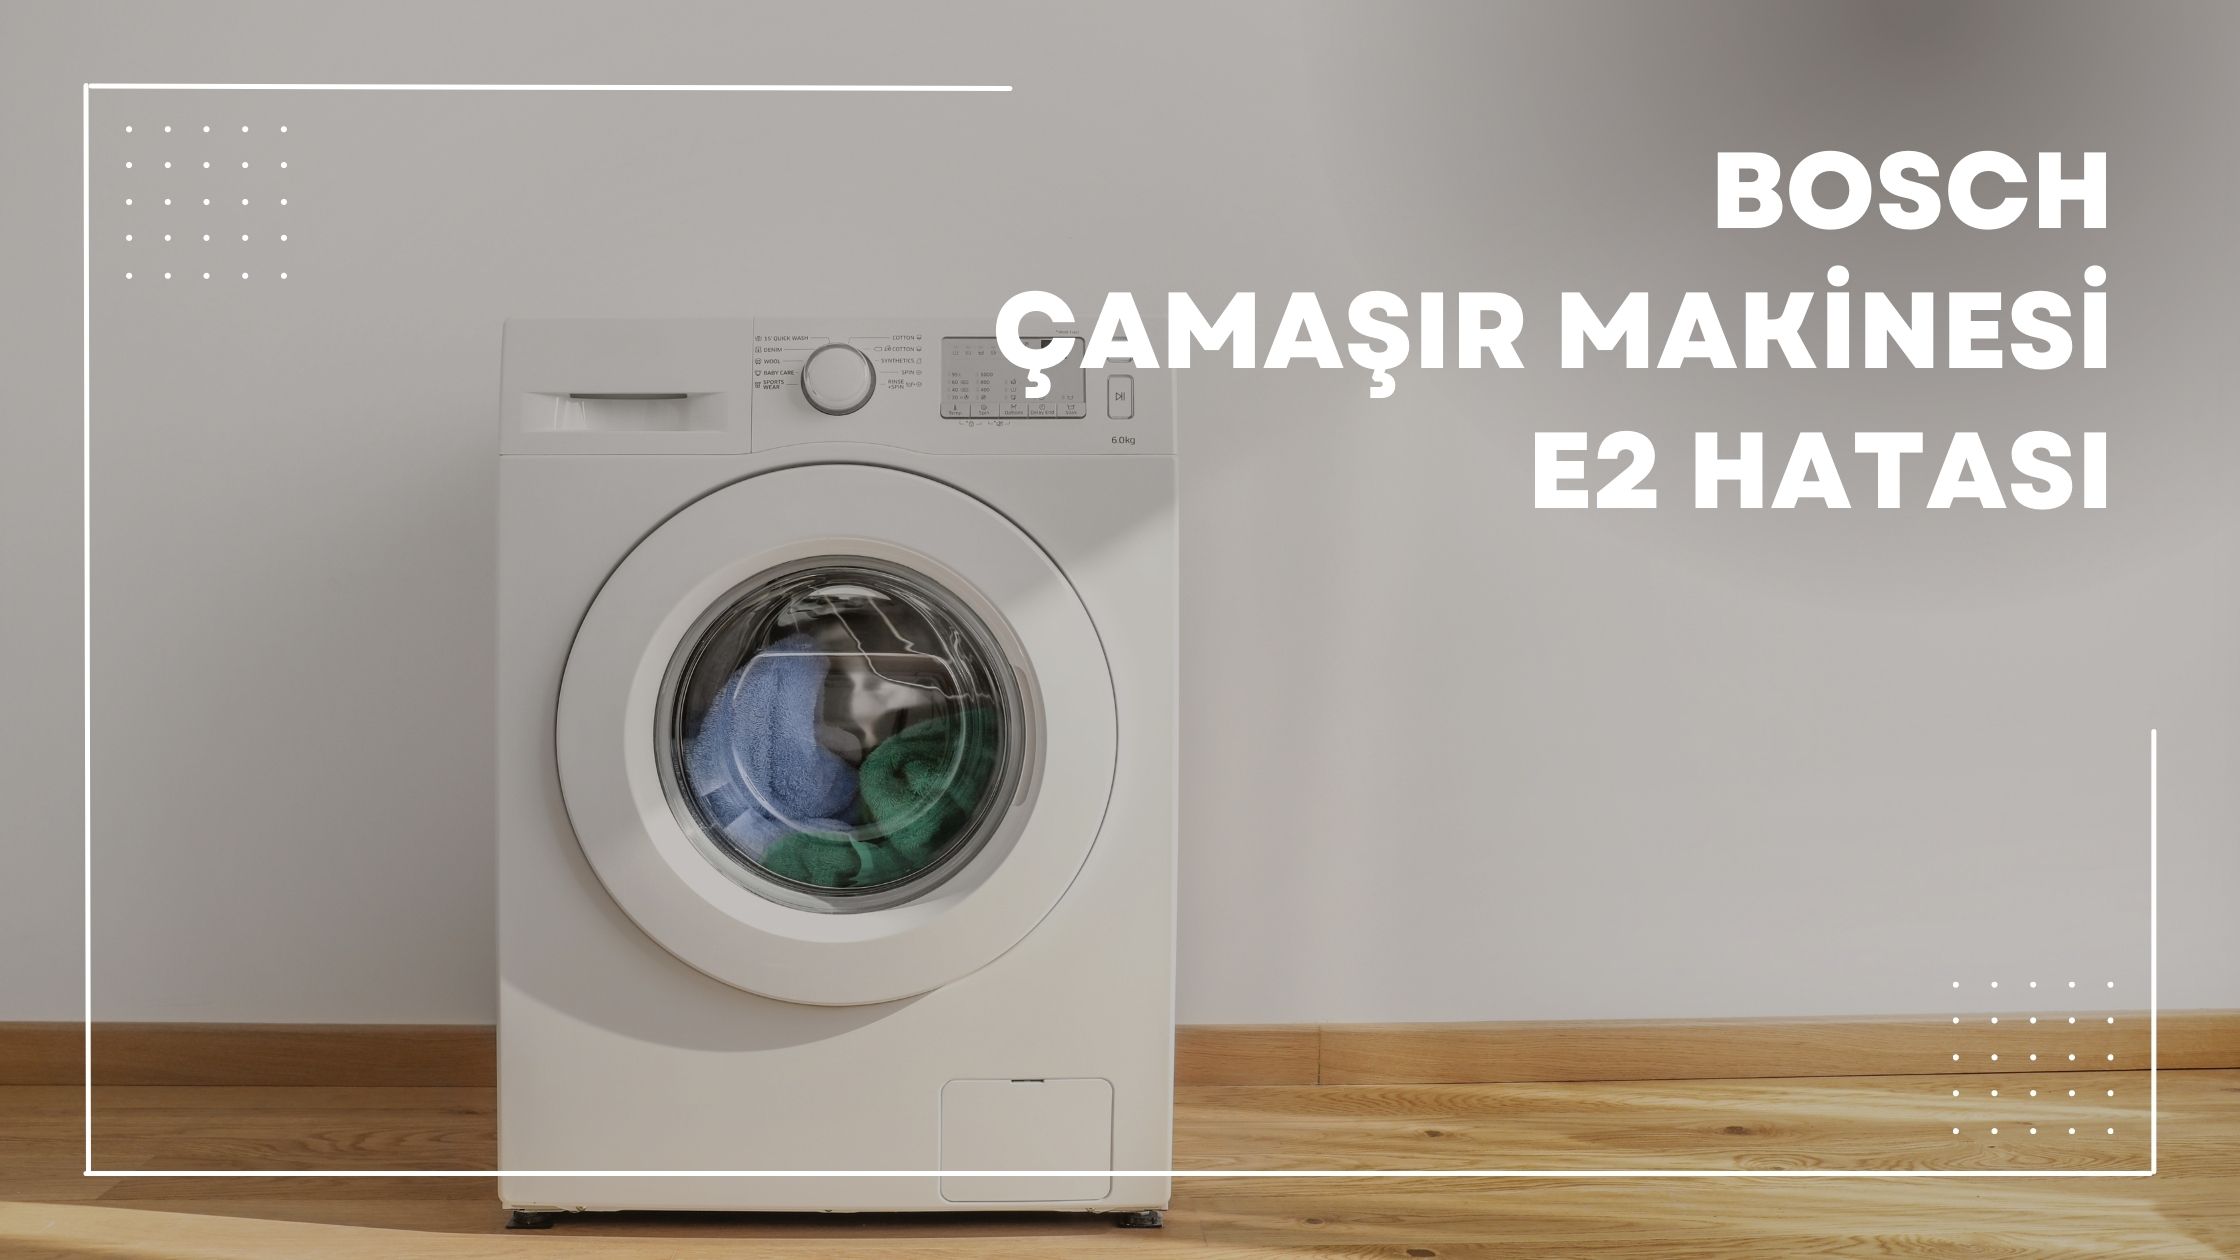 Bosch Çamaşır Makinesi E2 Hatası